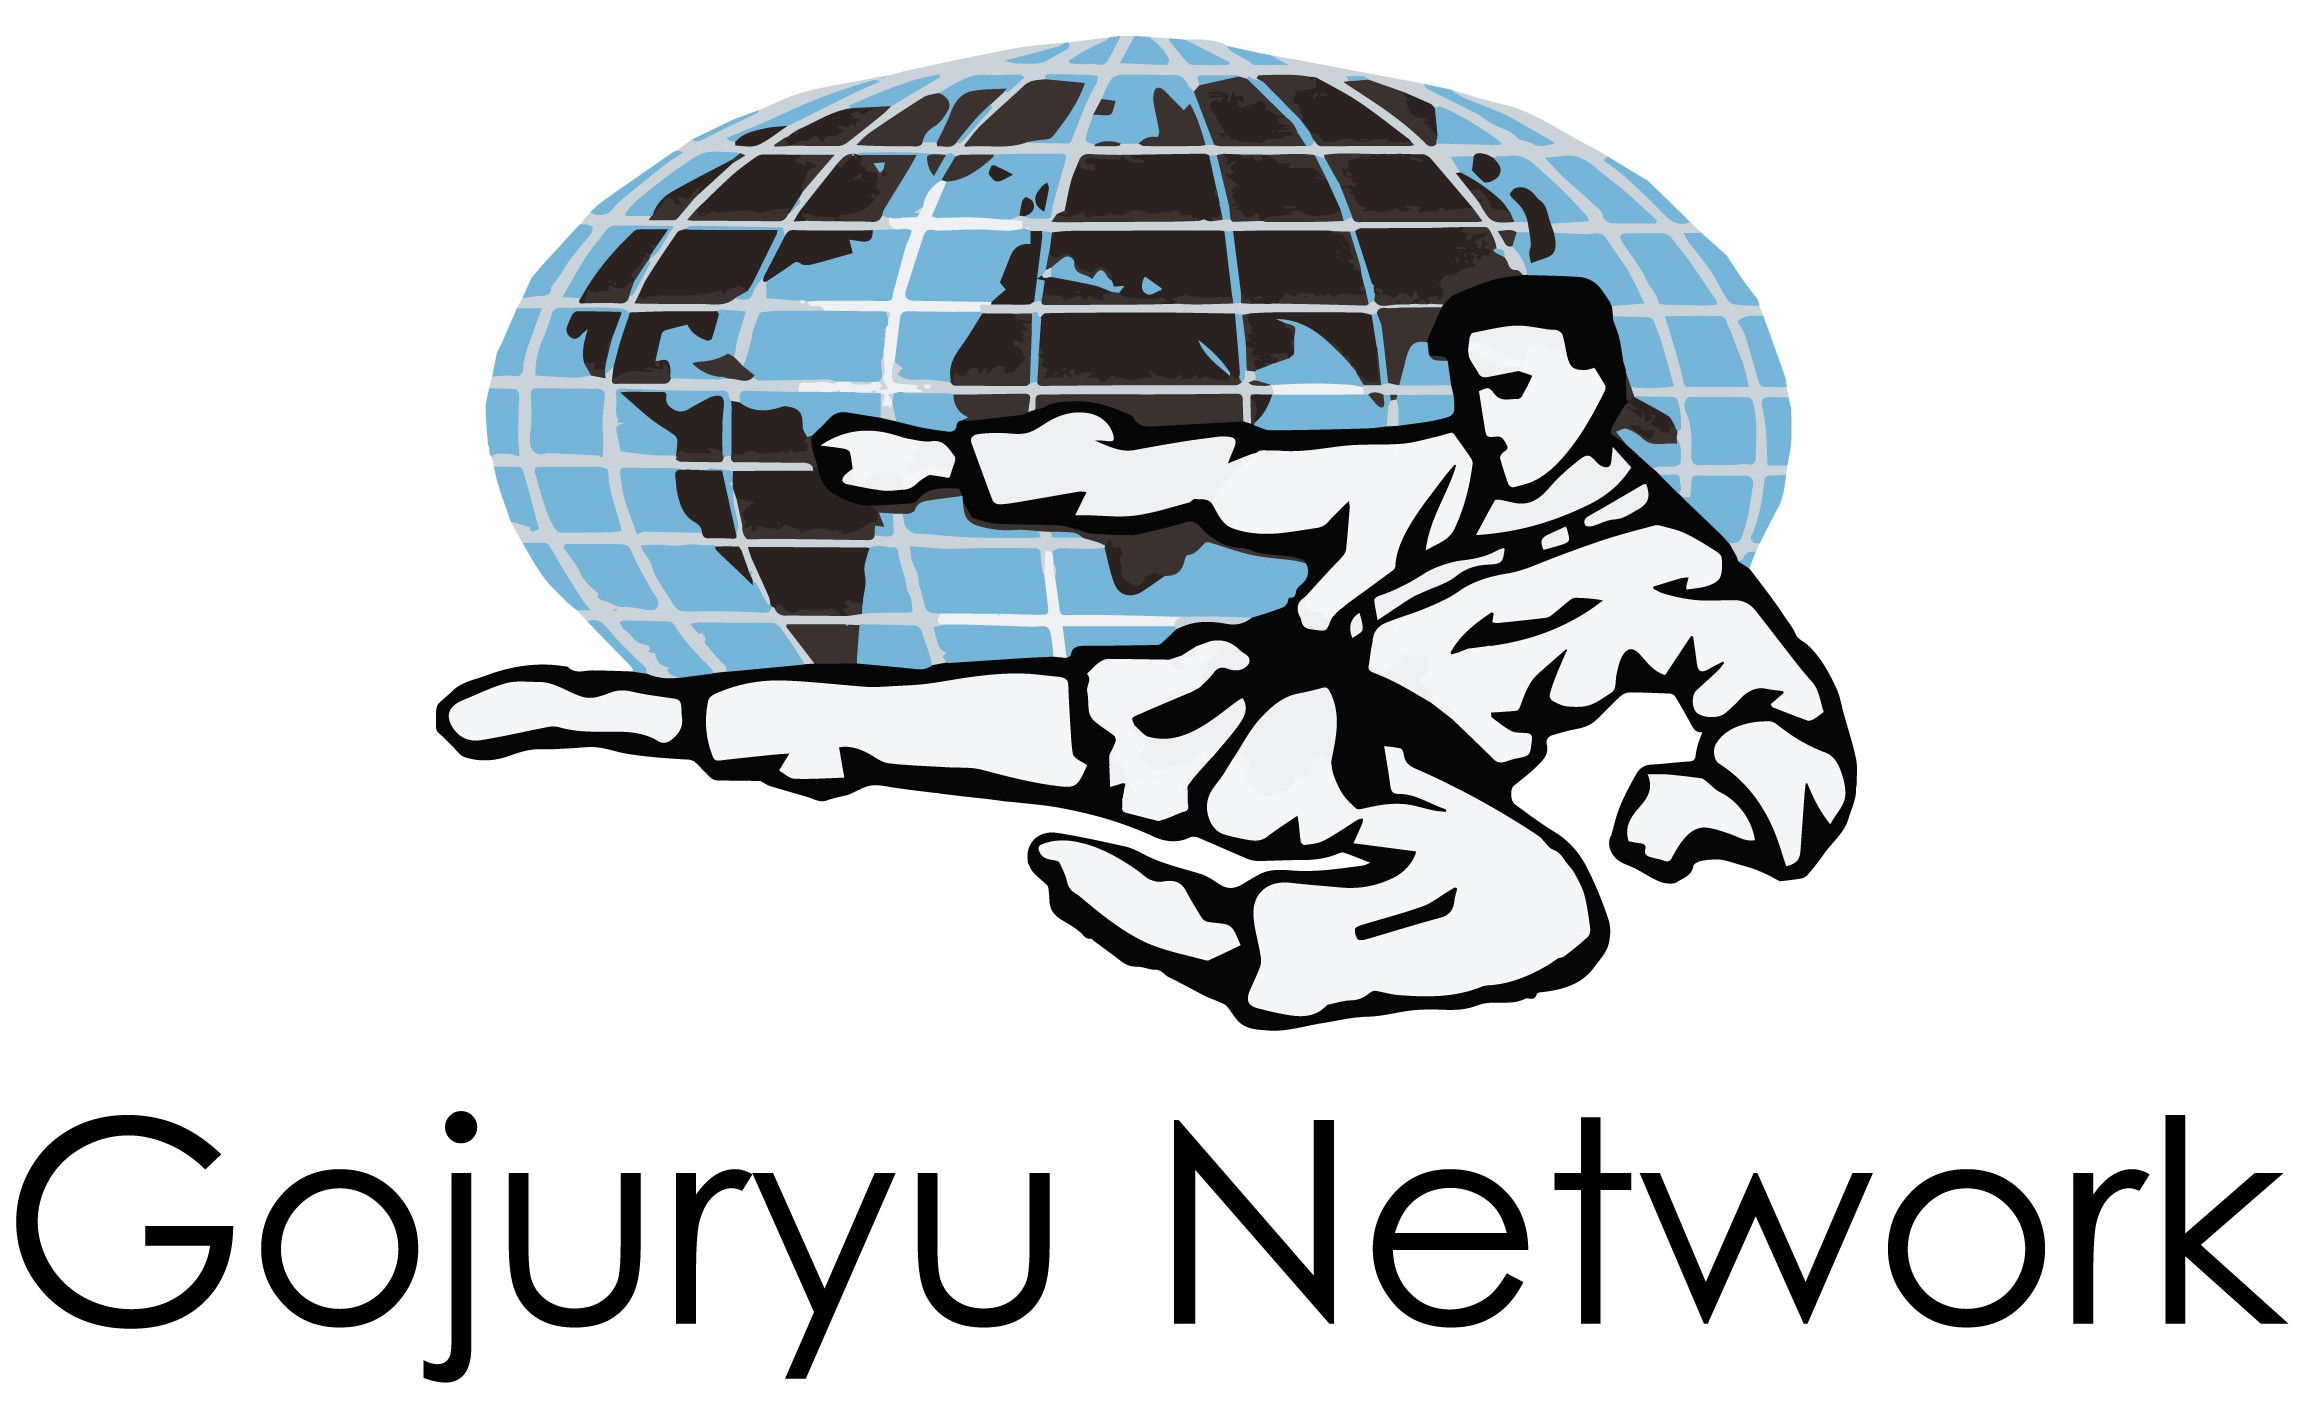 All Gojuryu Network